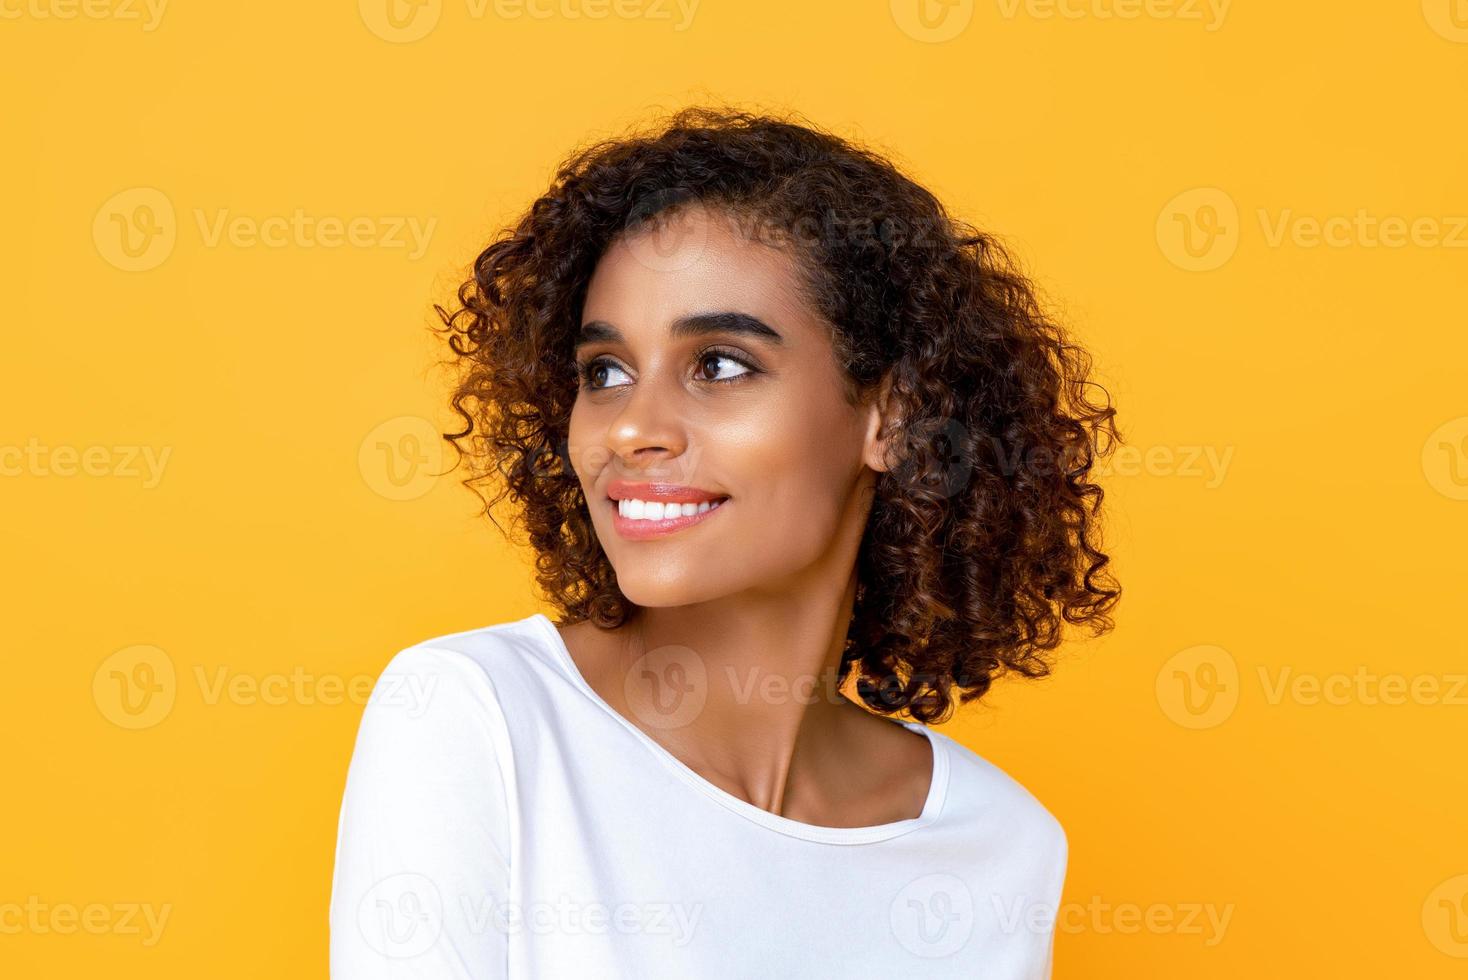 närbild porträtt av leende ung vacker afrikansk amerikansk kvinna som tänker medan hon glatt tittar på sidan i isolerad studio gul bakgrund foto